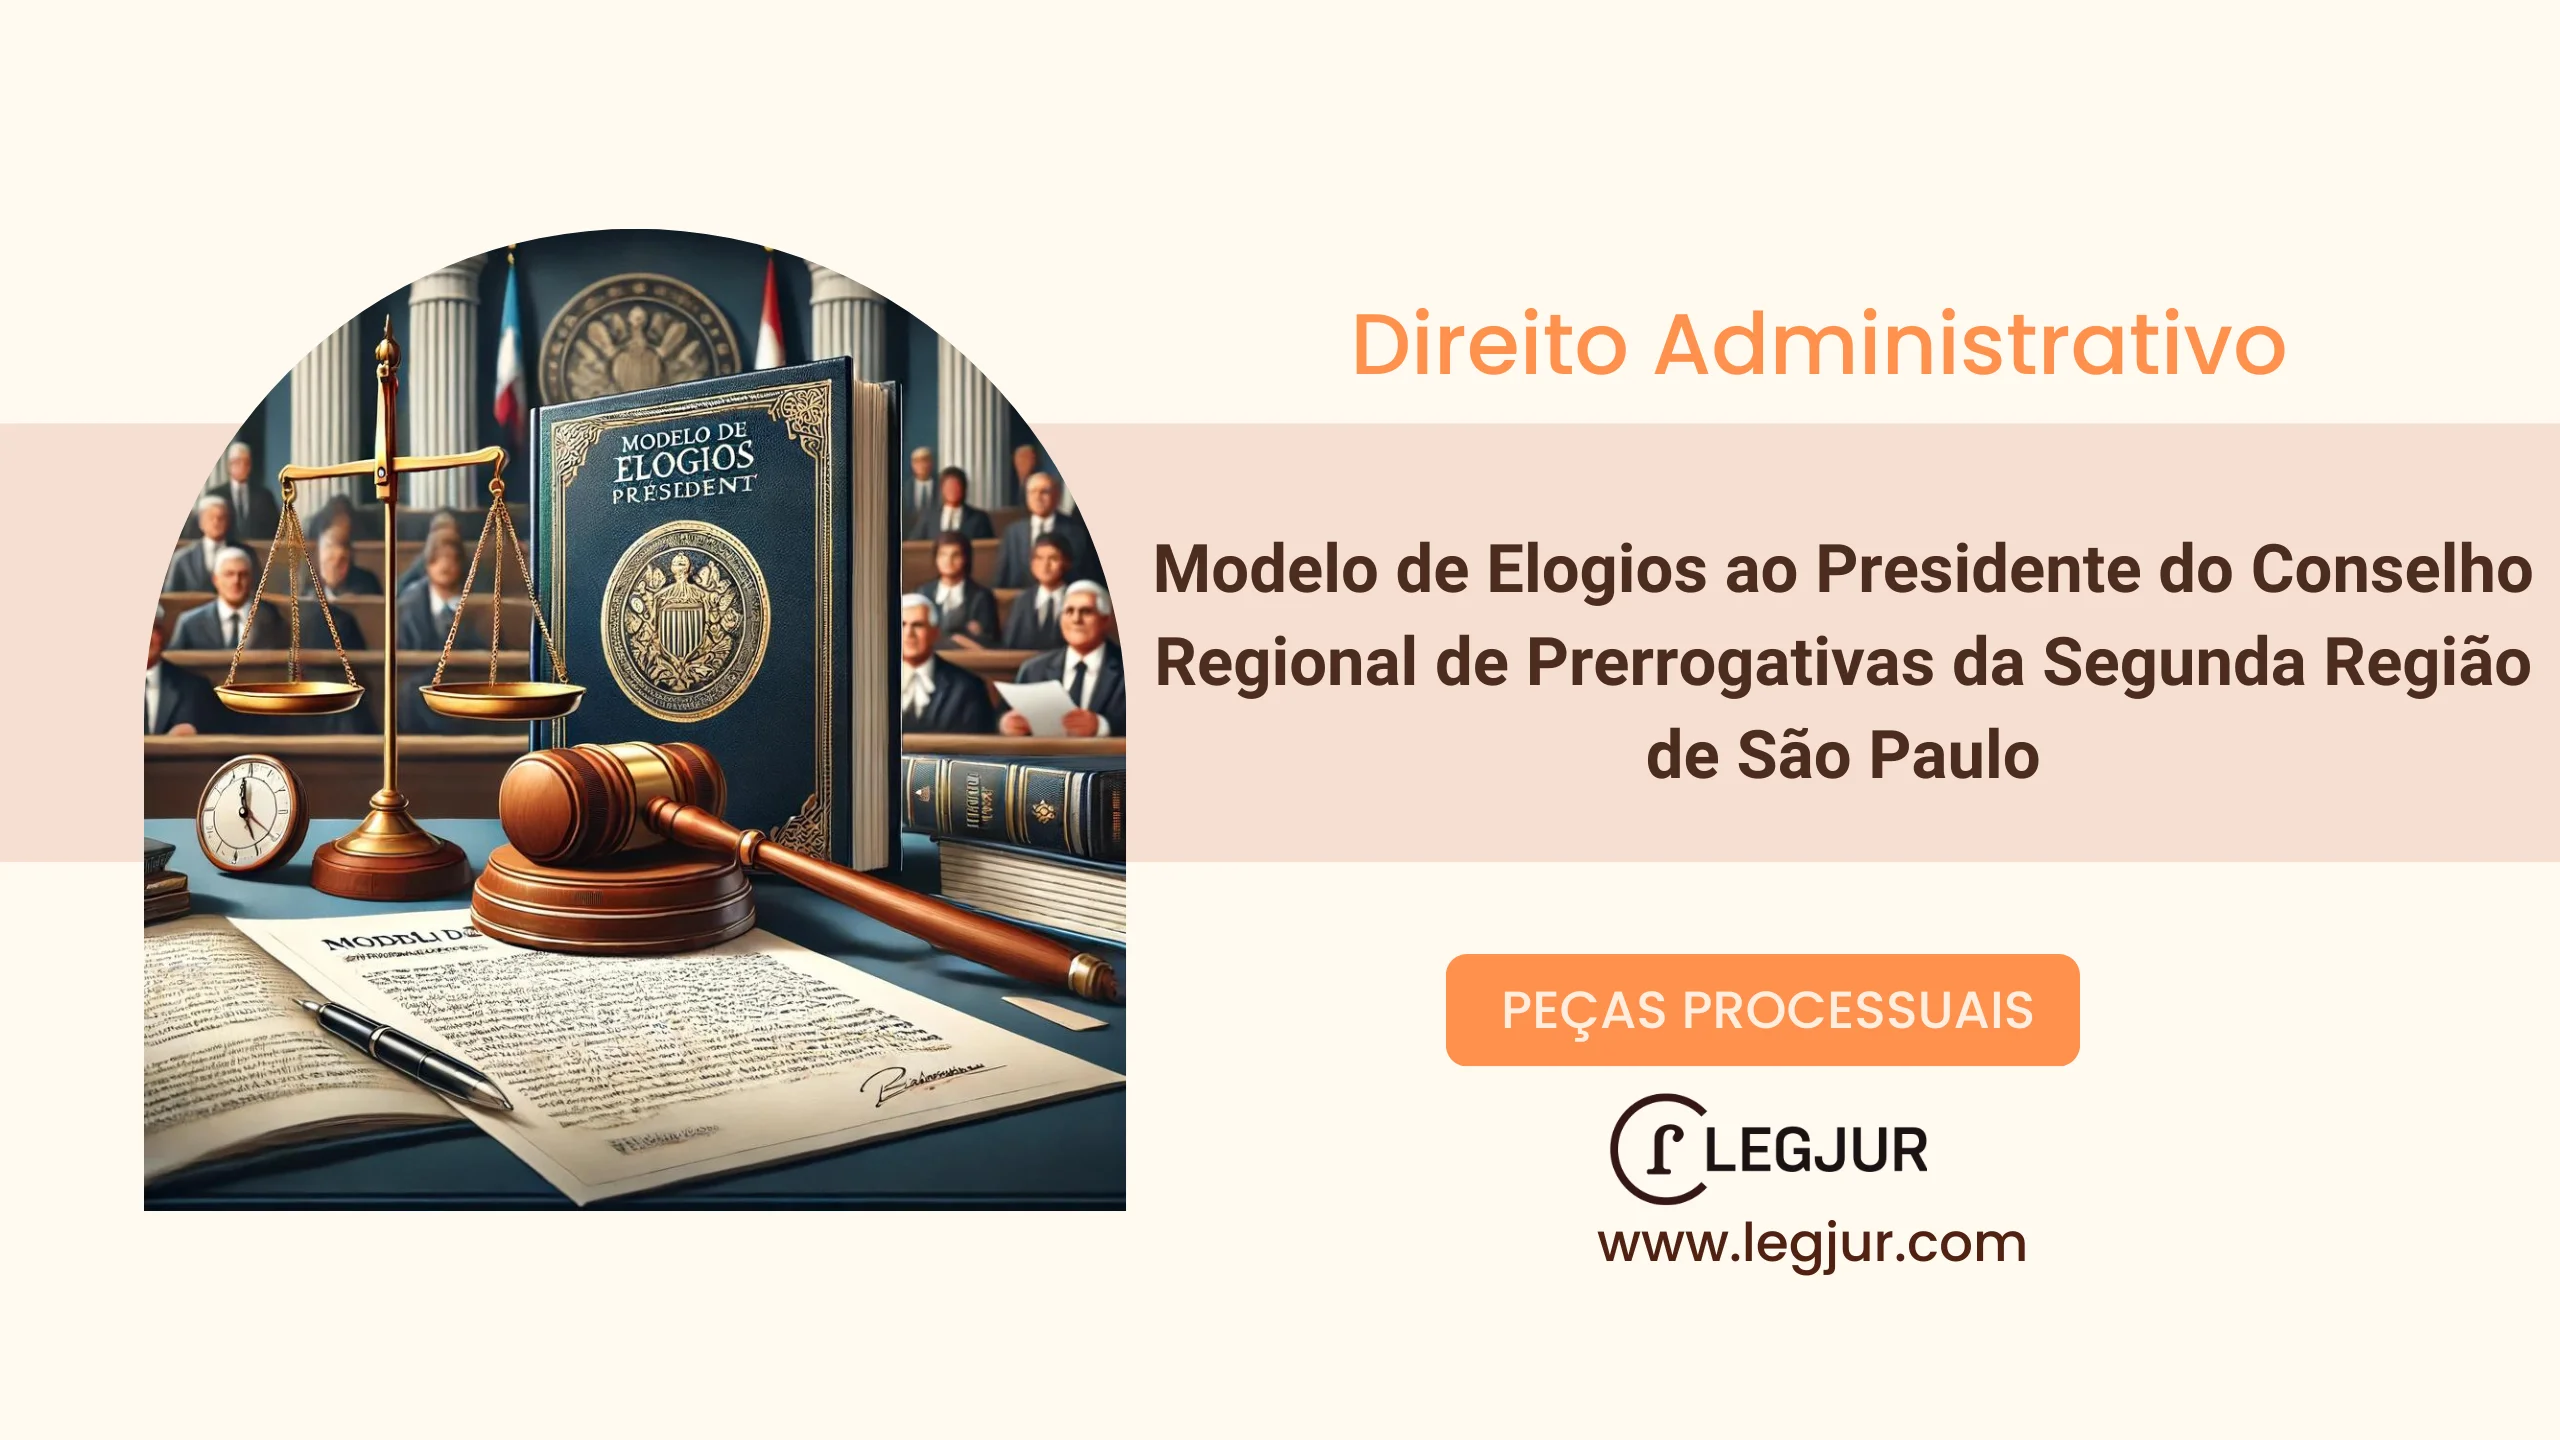 Modelo de Elogios ao Presidente do Conselho Regional de Prerrogativas da Segunda Região de São Paulo